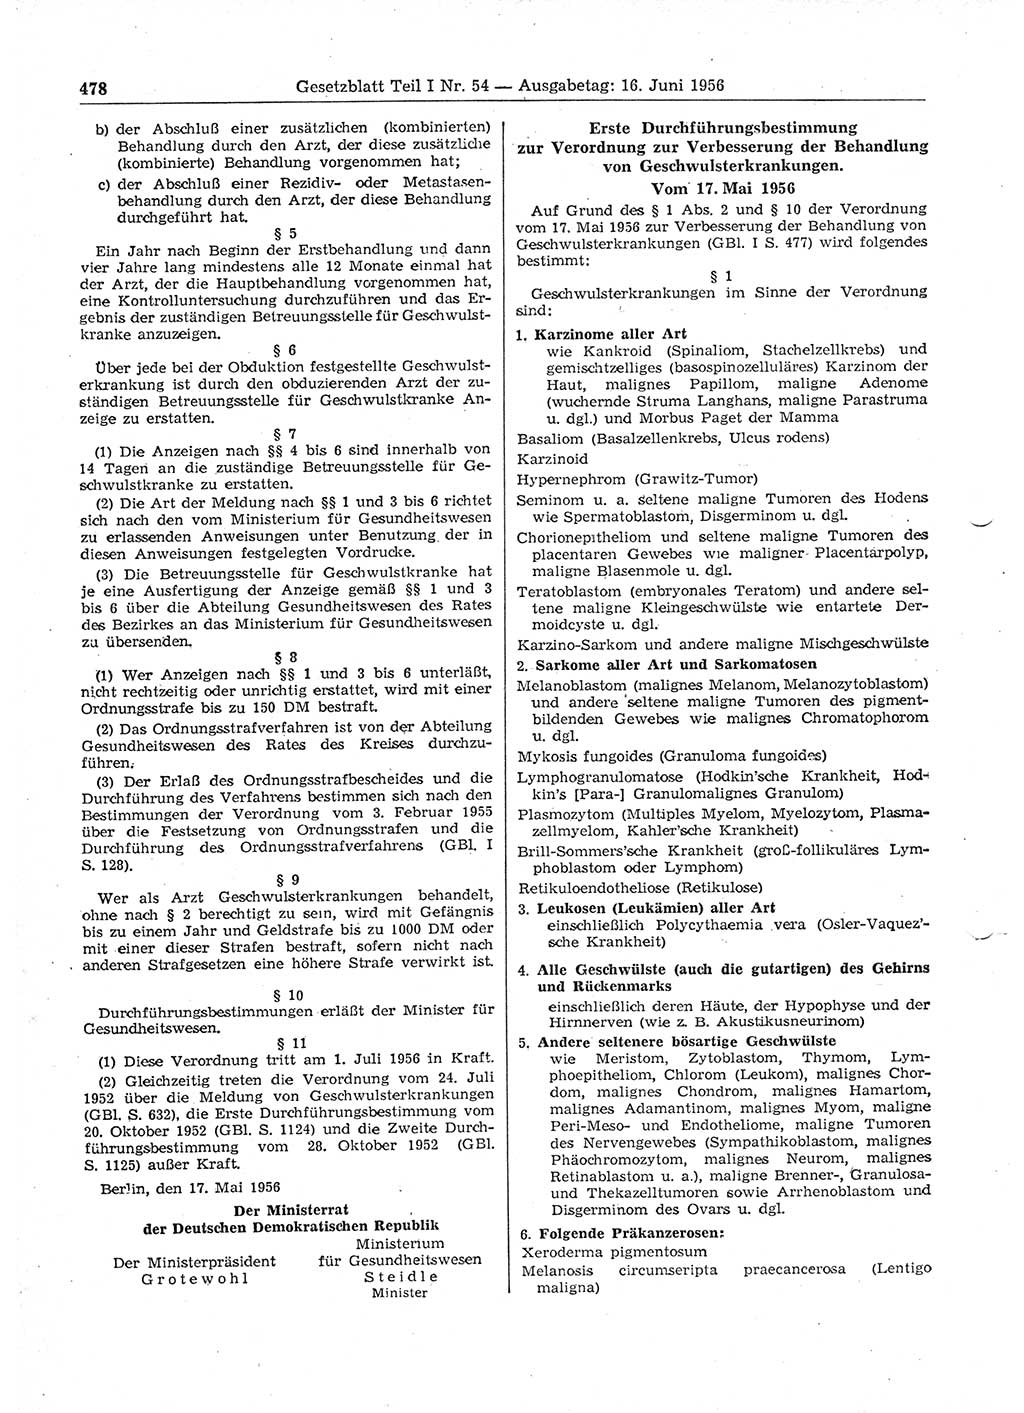 Gesetzblatt (GBl.) der Deutschen Demokratischen Republik (DDR) Teil Ⅰ 1956, Seite 478 (GBl. DDR Ⅰ 1956, S. 478)